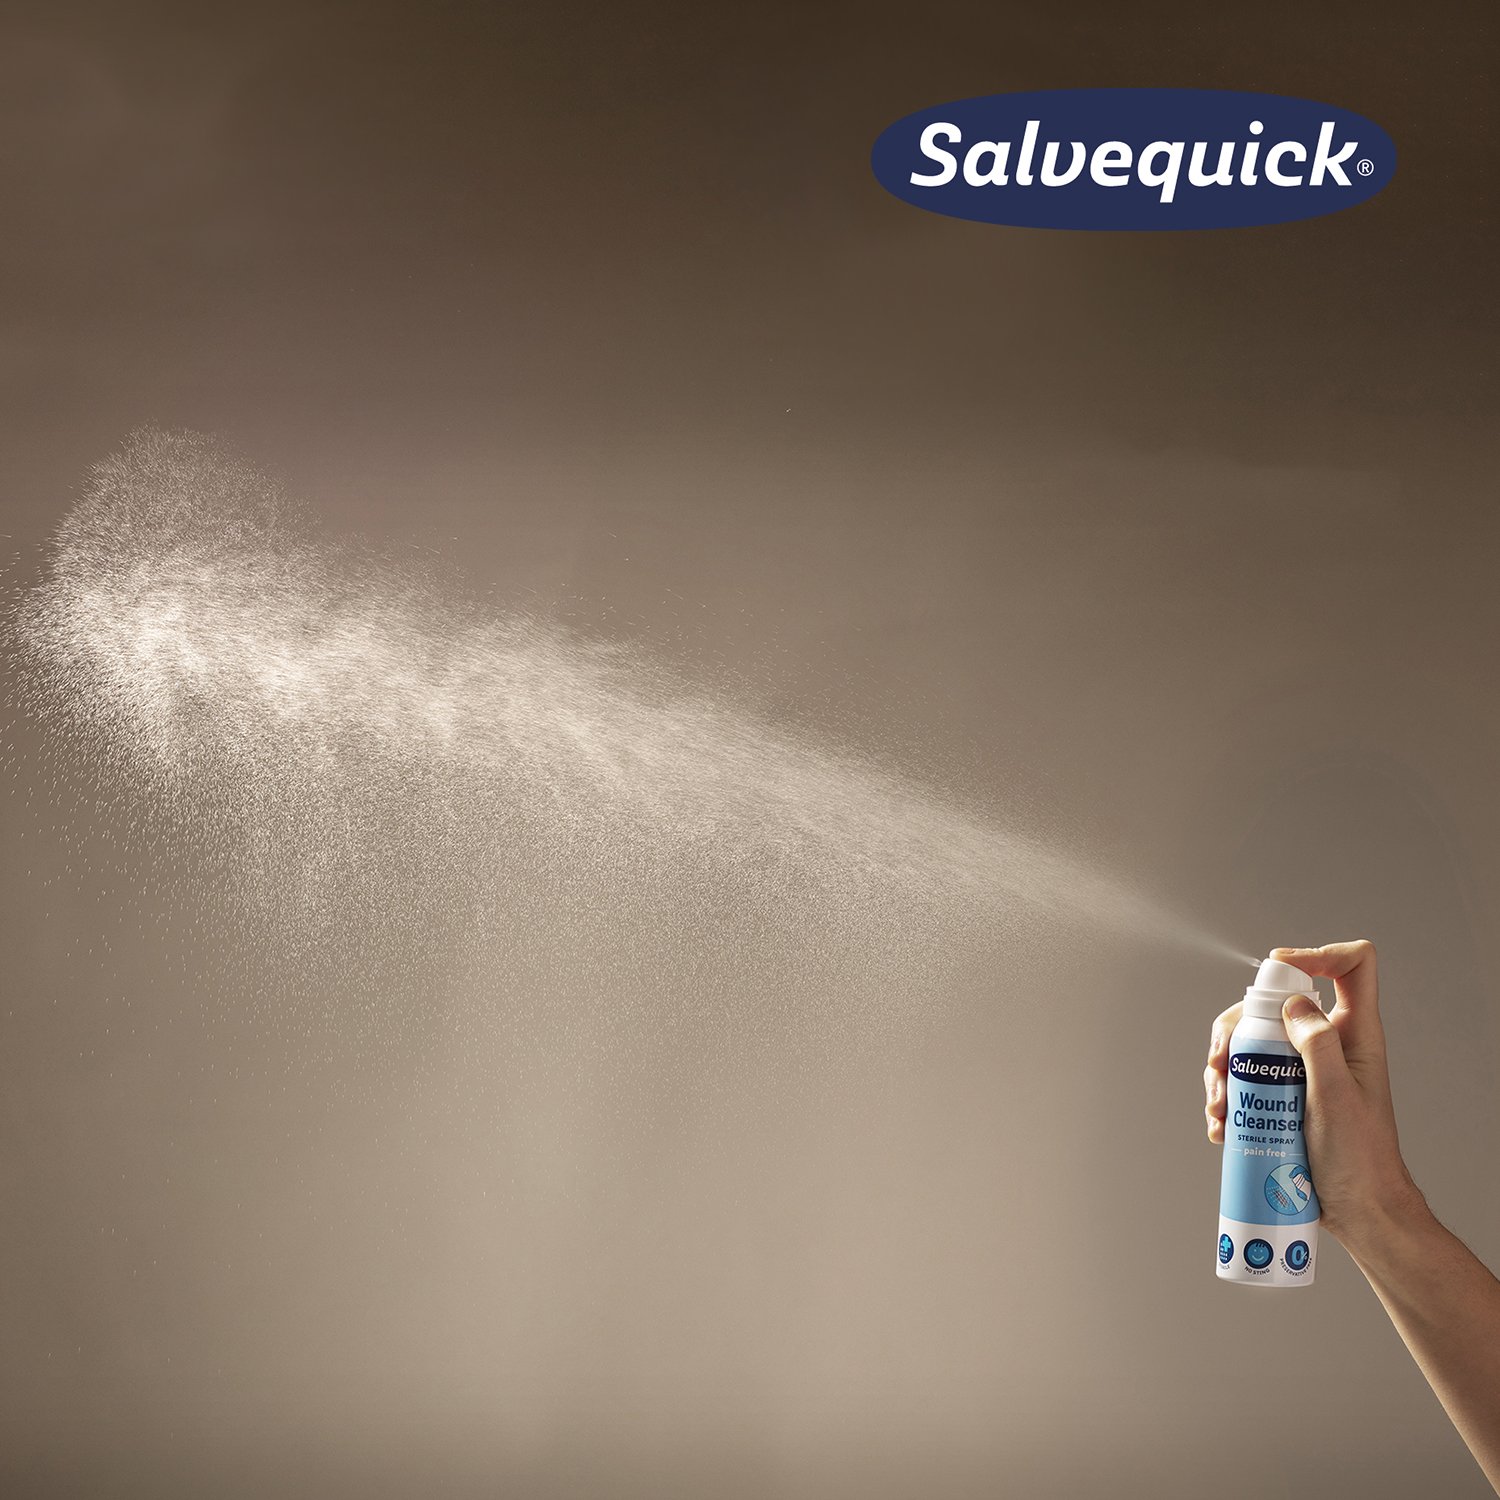 Salvequick Wound Cleanser Spray 100 ml